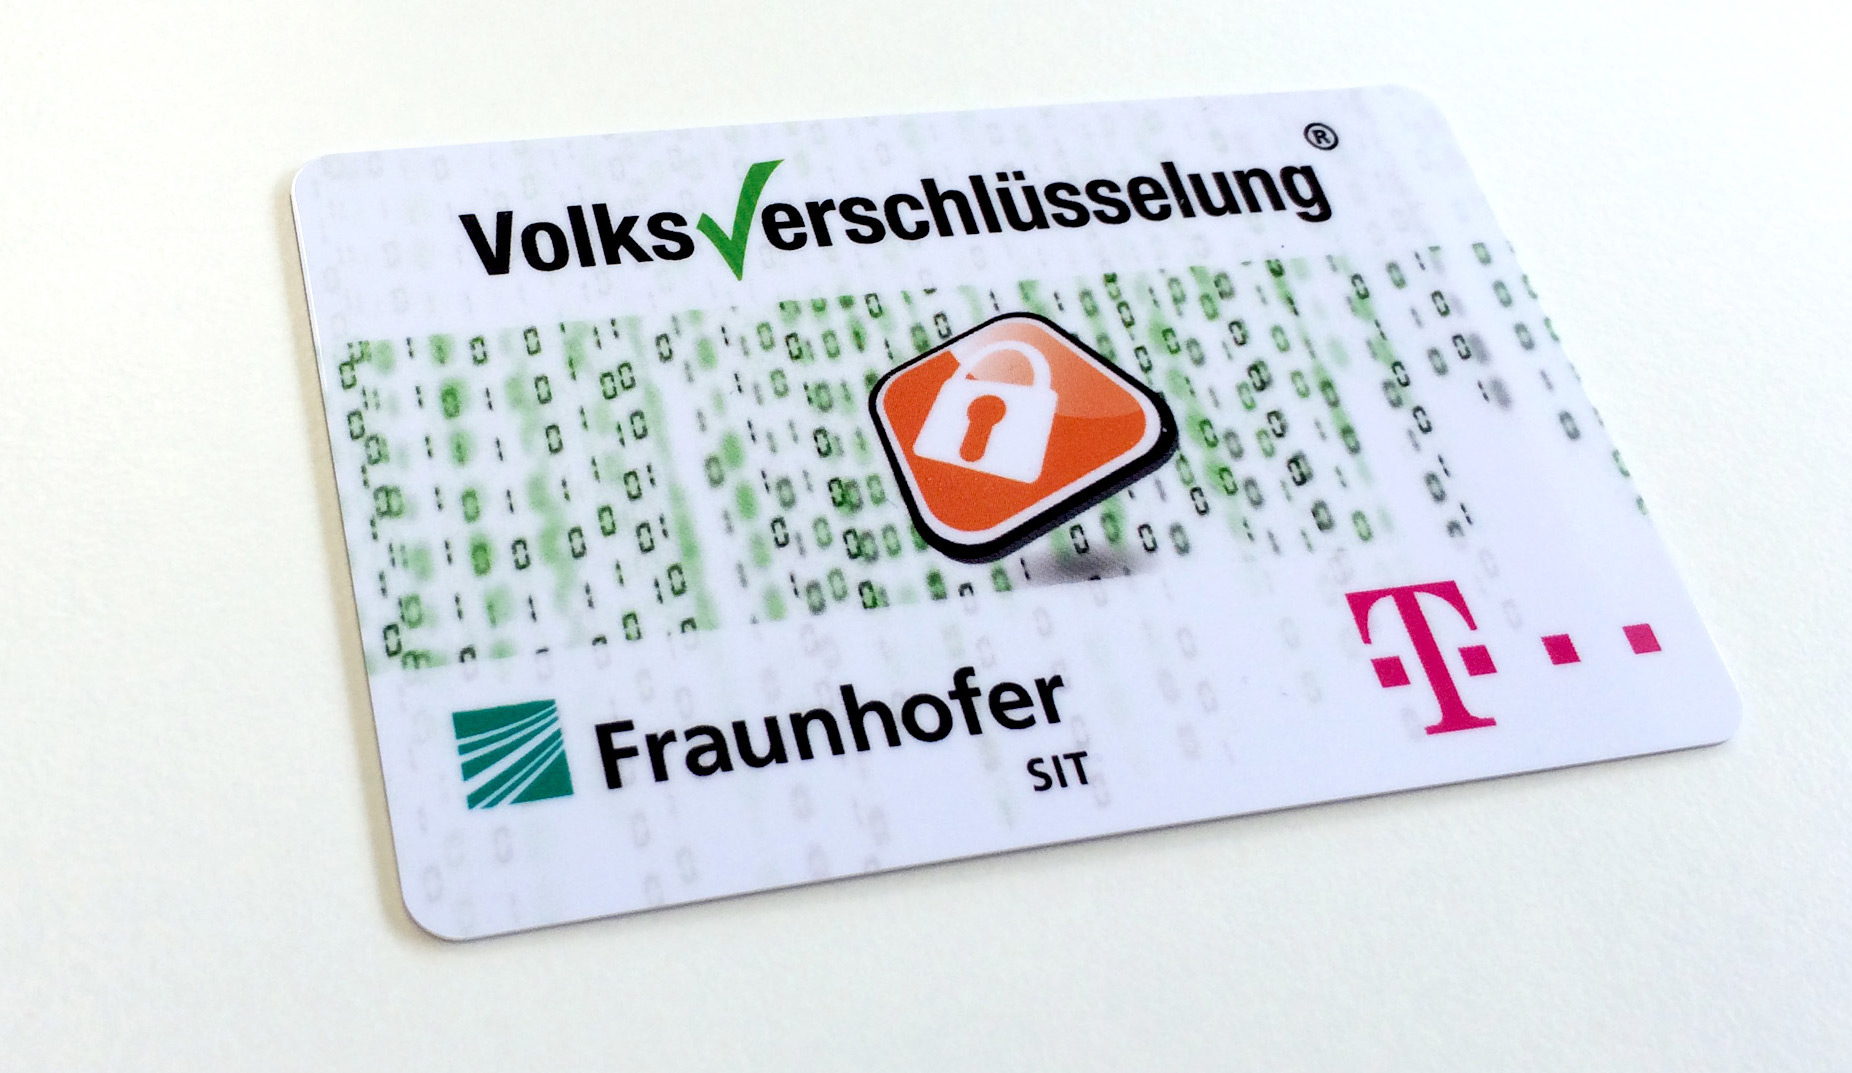 Ende-zu-Ende-Verschlüsselung für alle – Fraunhofer SIT und Telekom starten mit kostenloser Lösung